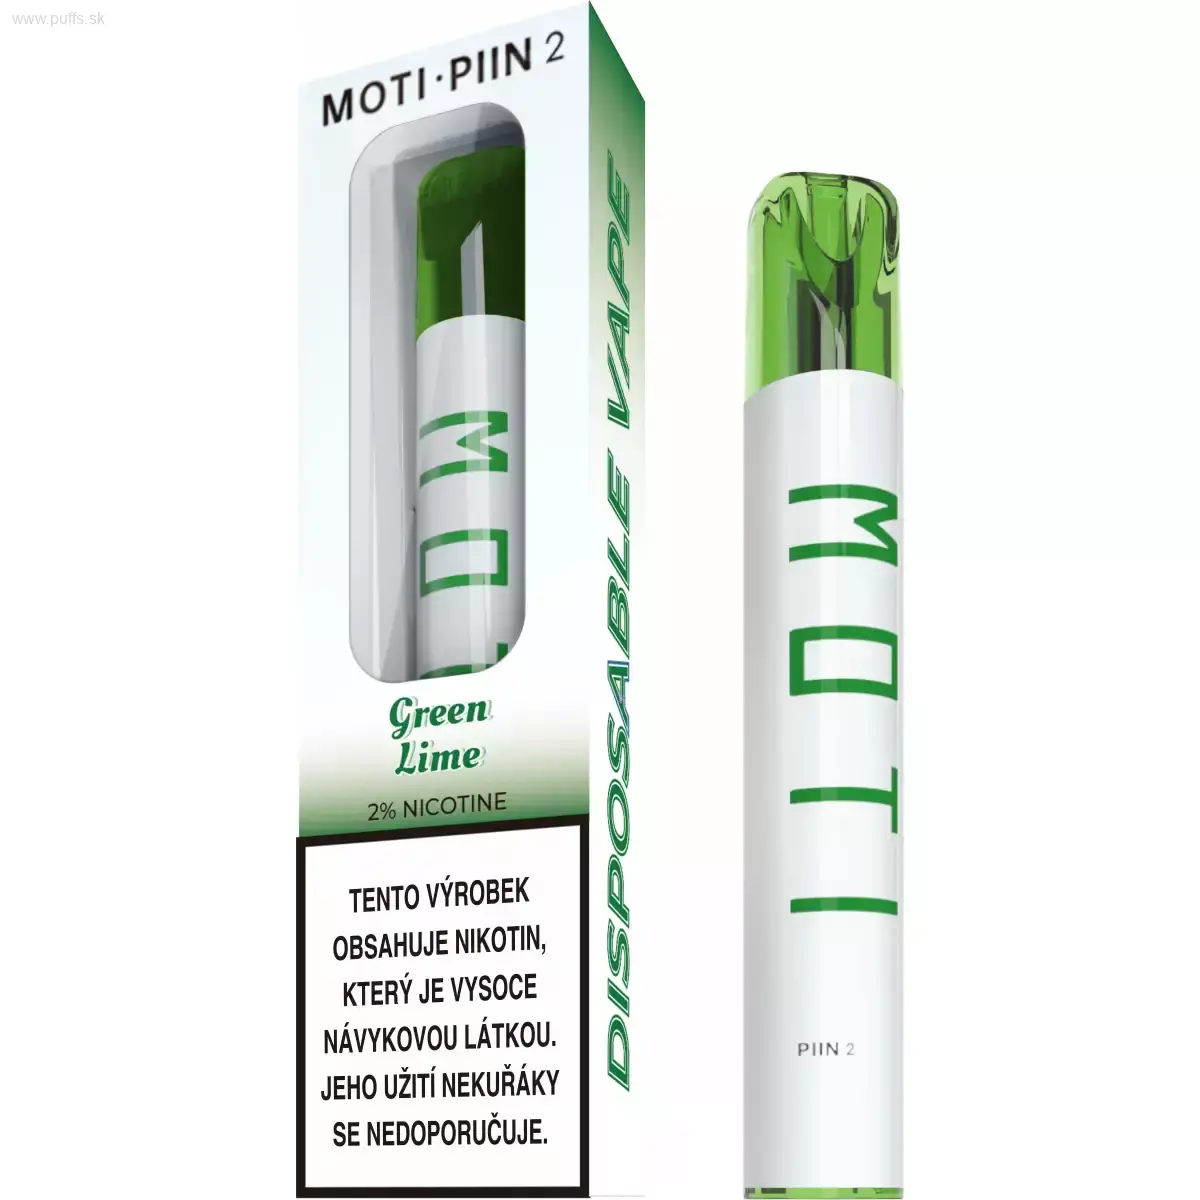 MOTI - PIIN 2 Green Lime